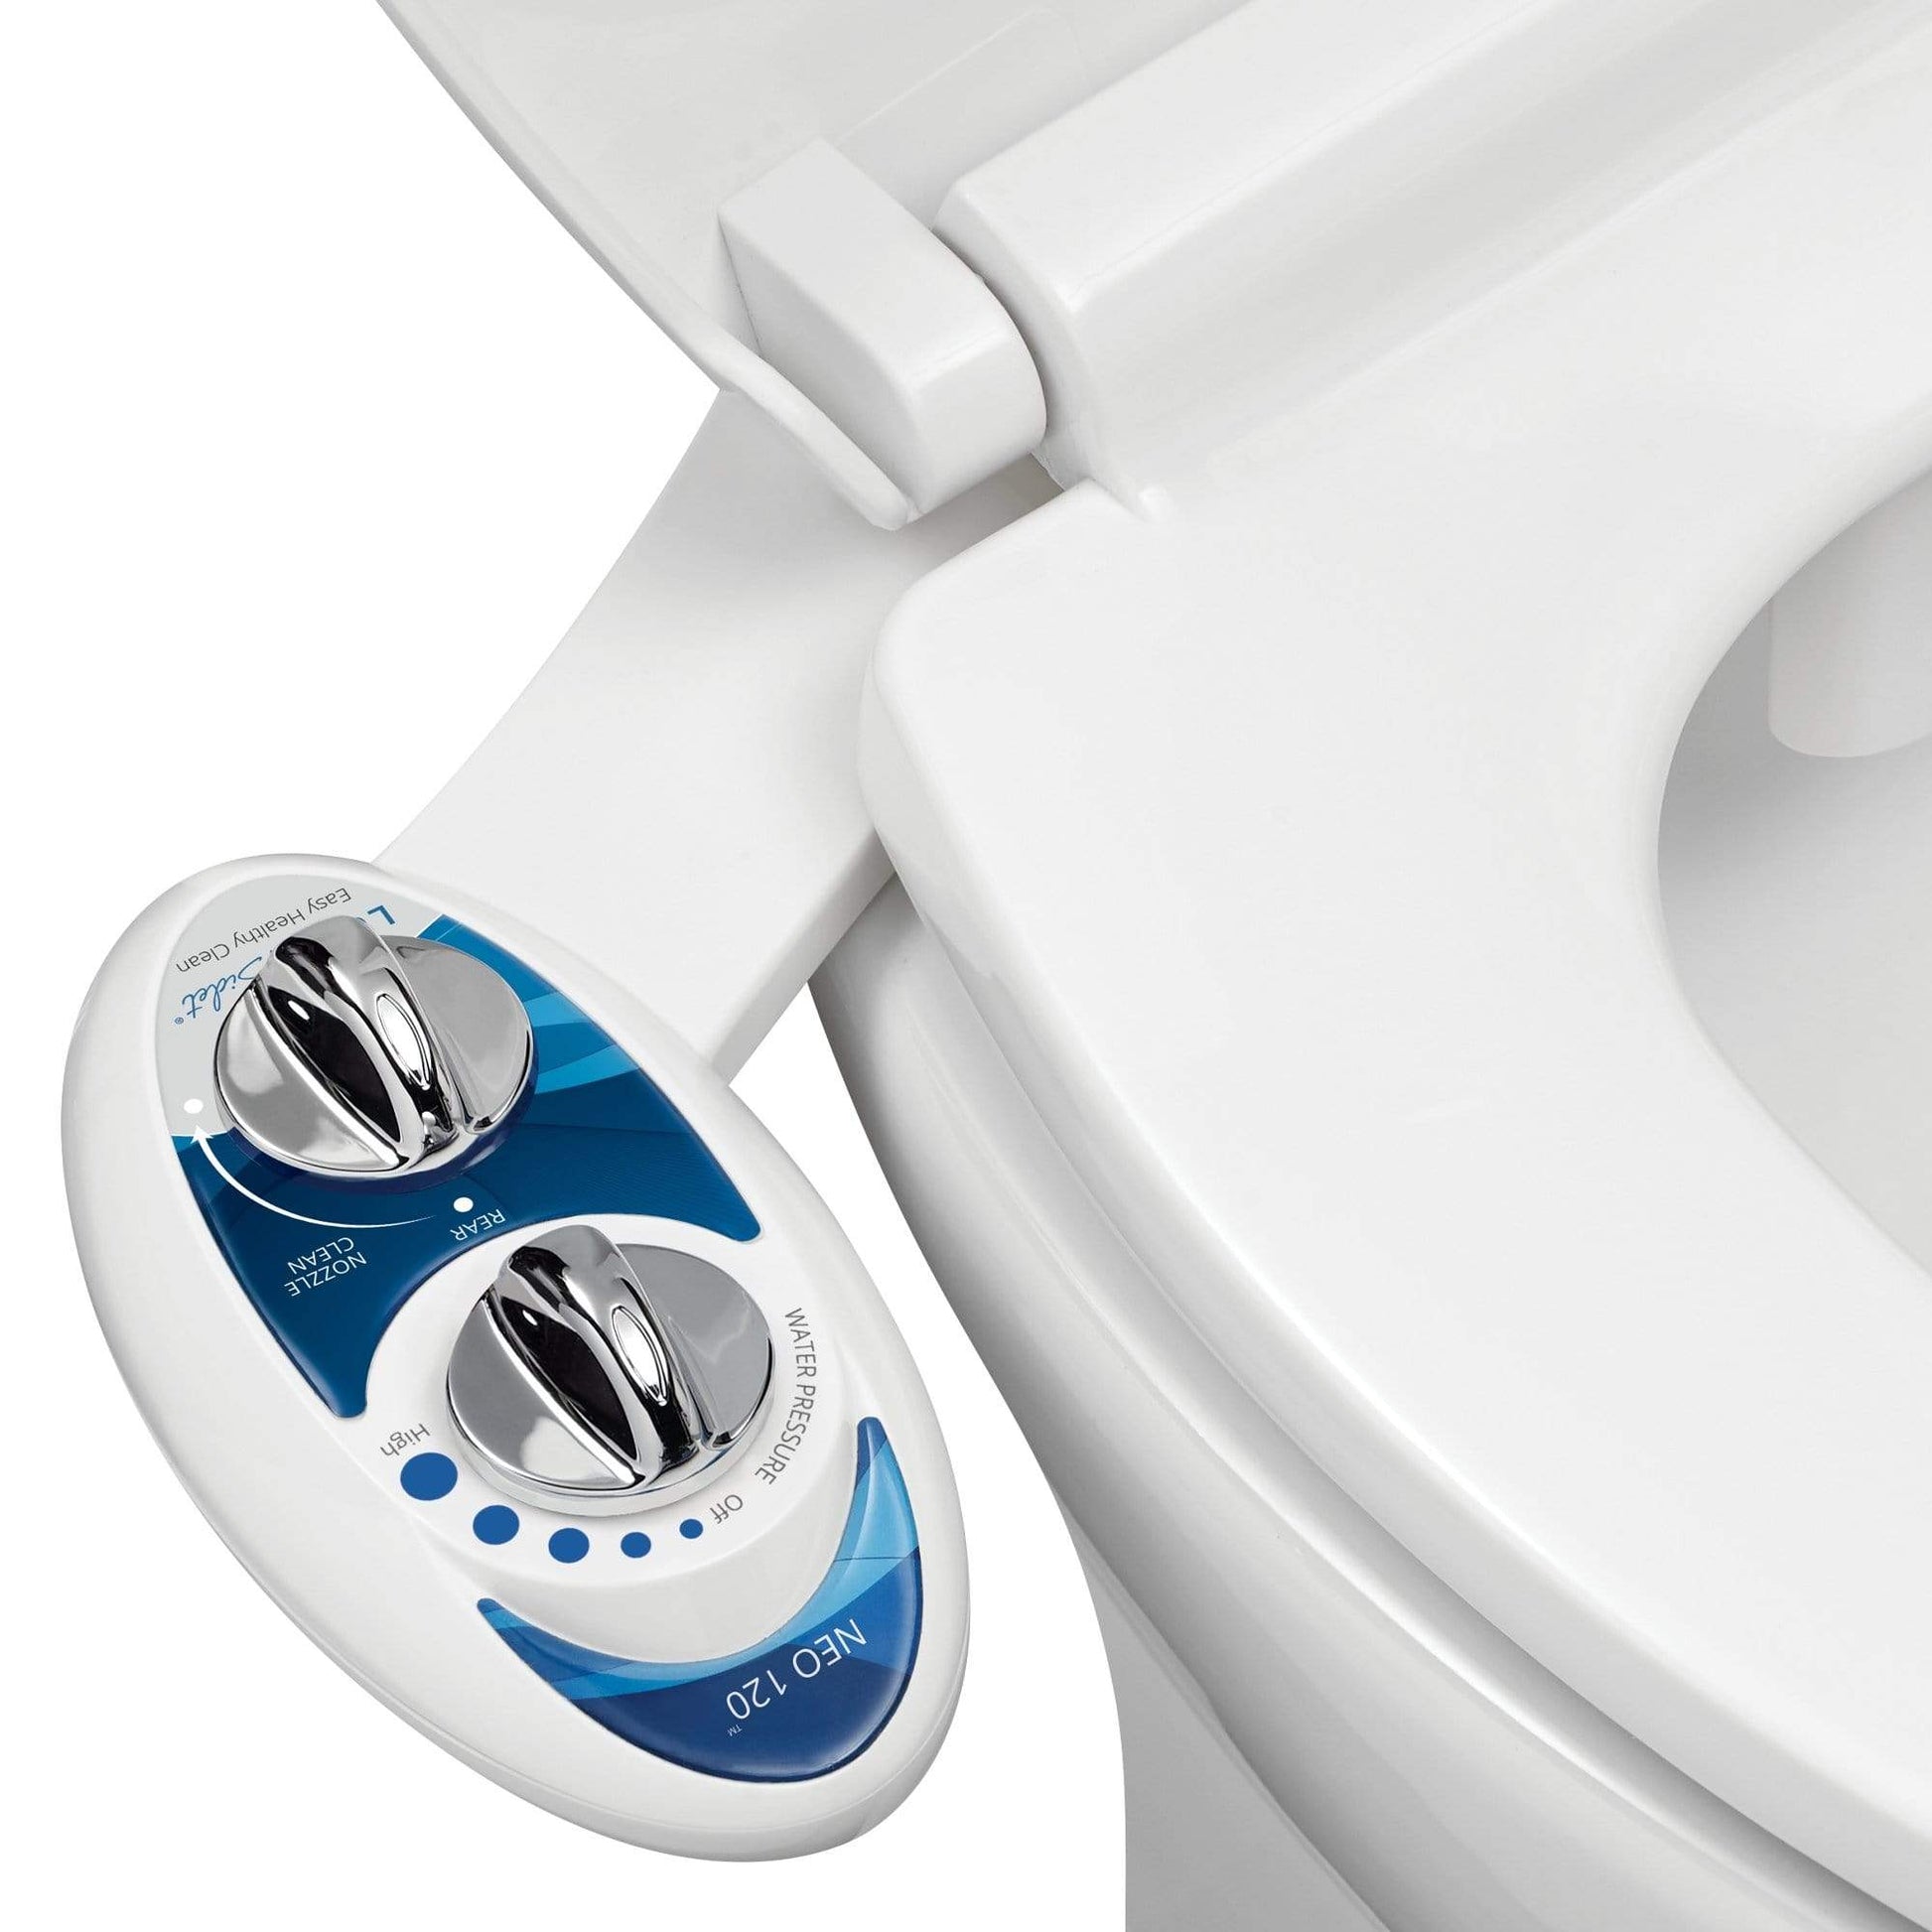 Washlet/Bidet seat for square toilet—sources? : r/bidets